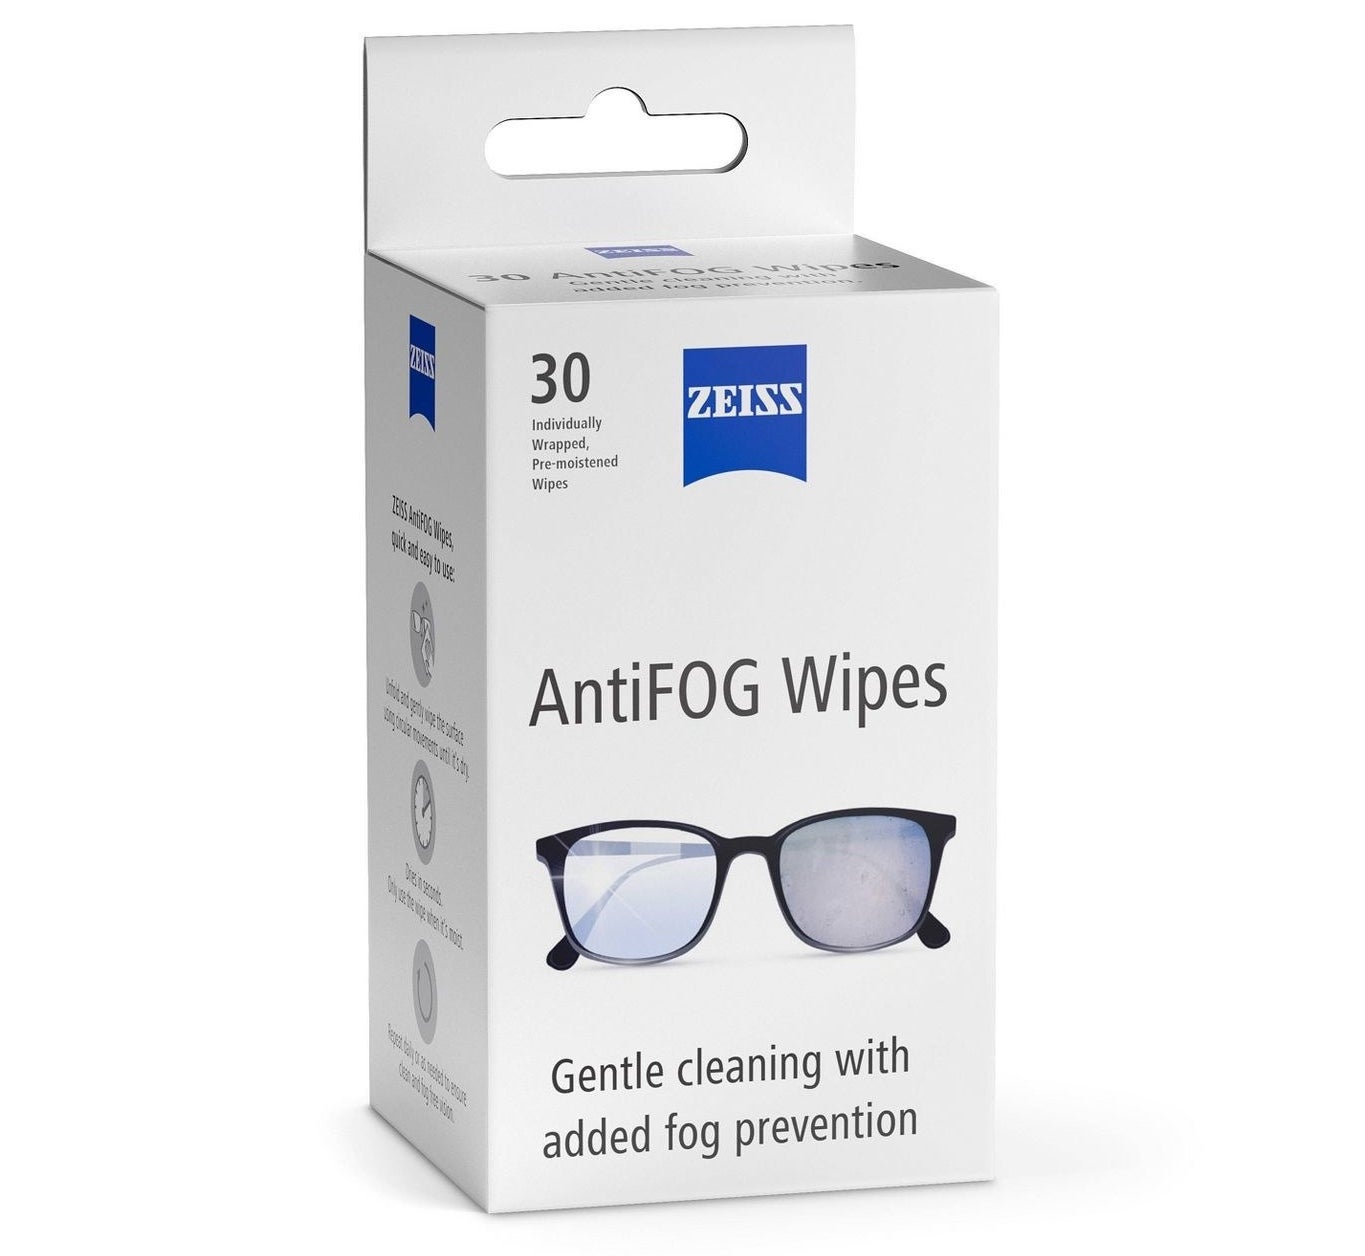 The pack of anti-fog wipes